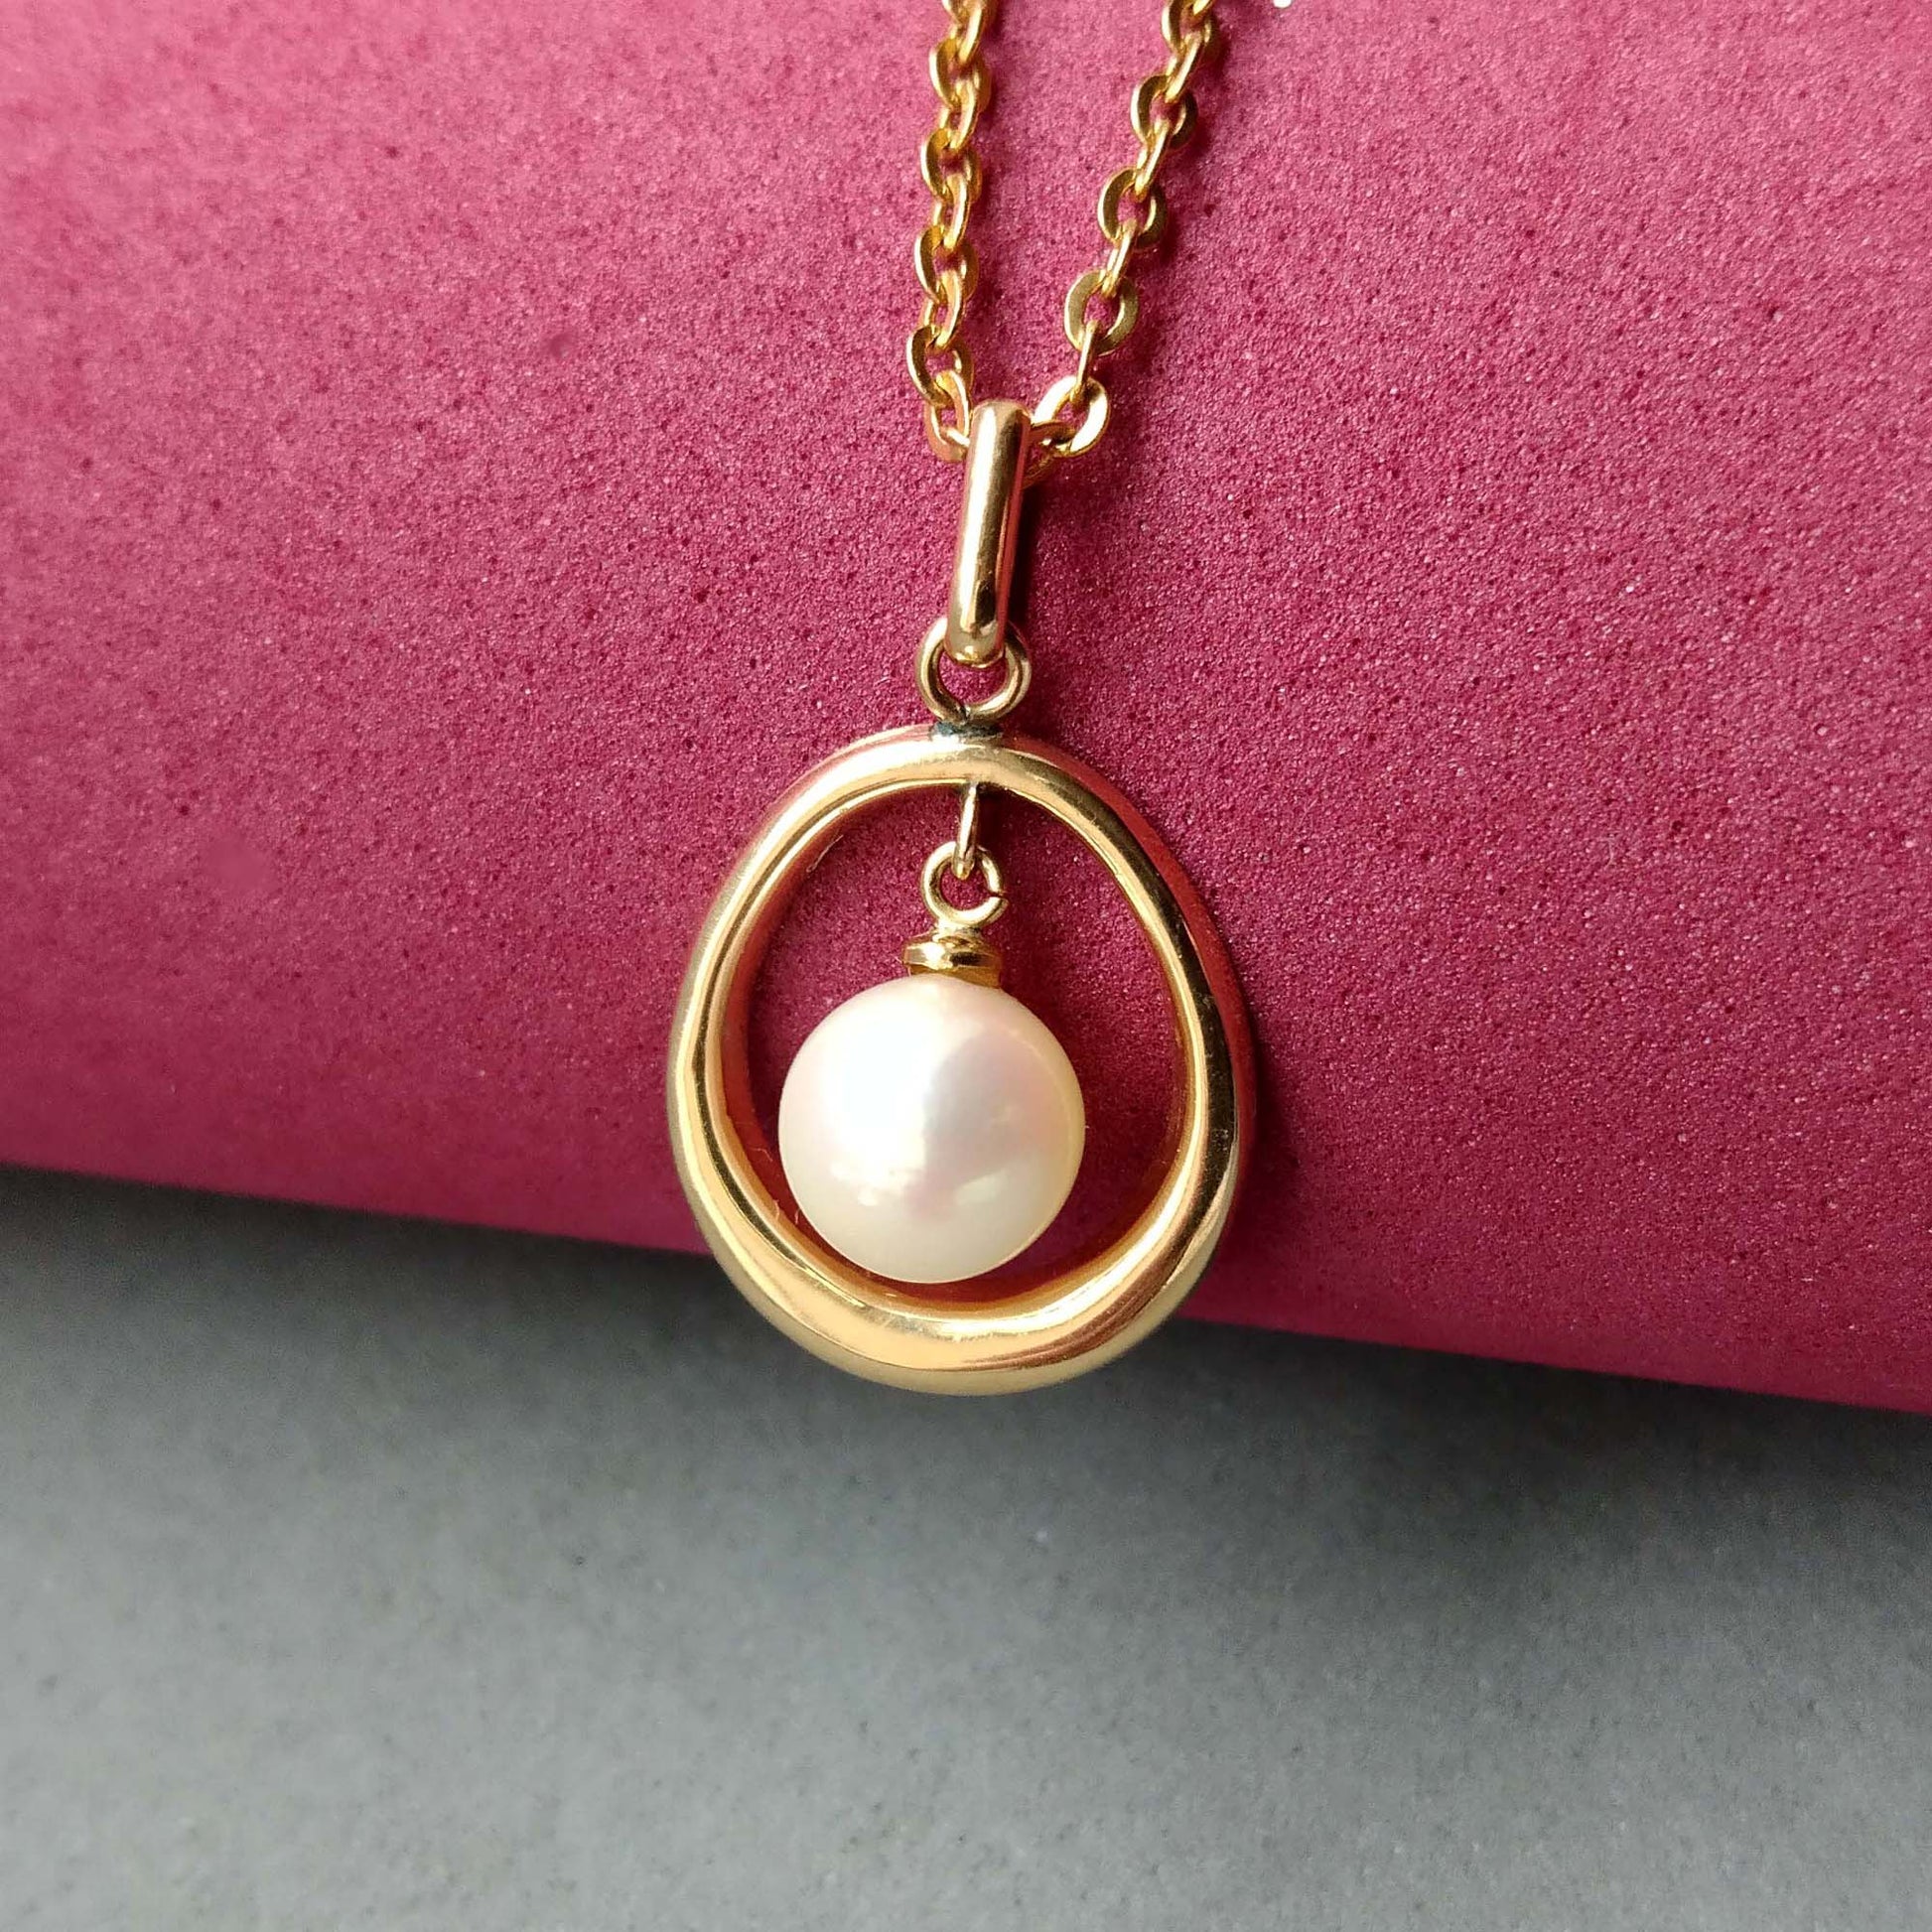 Dangling pearl pendant in 750 gold